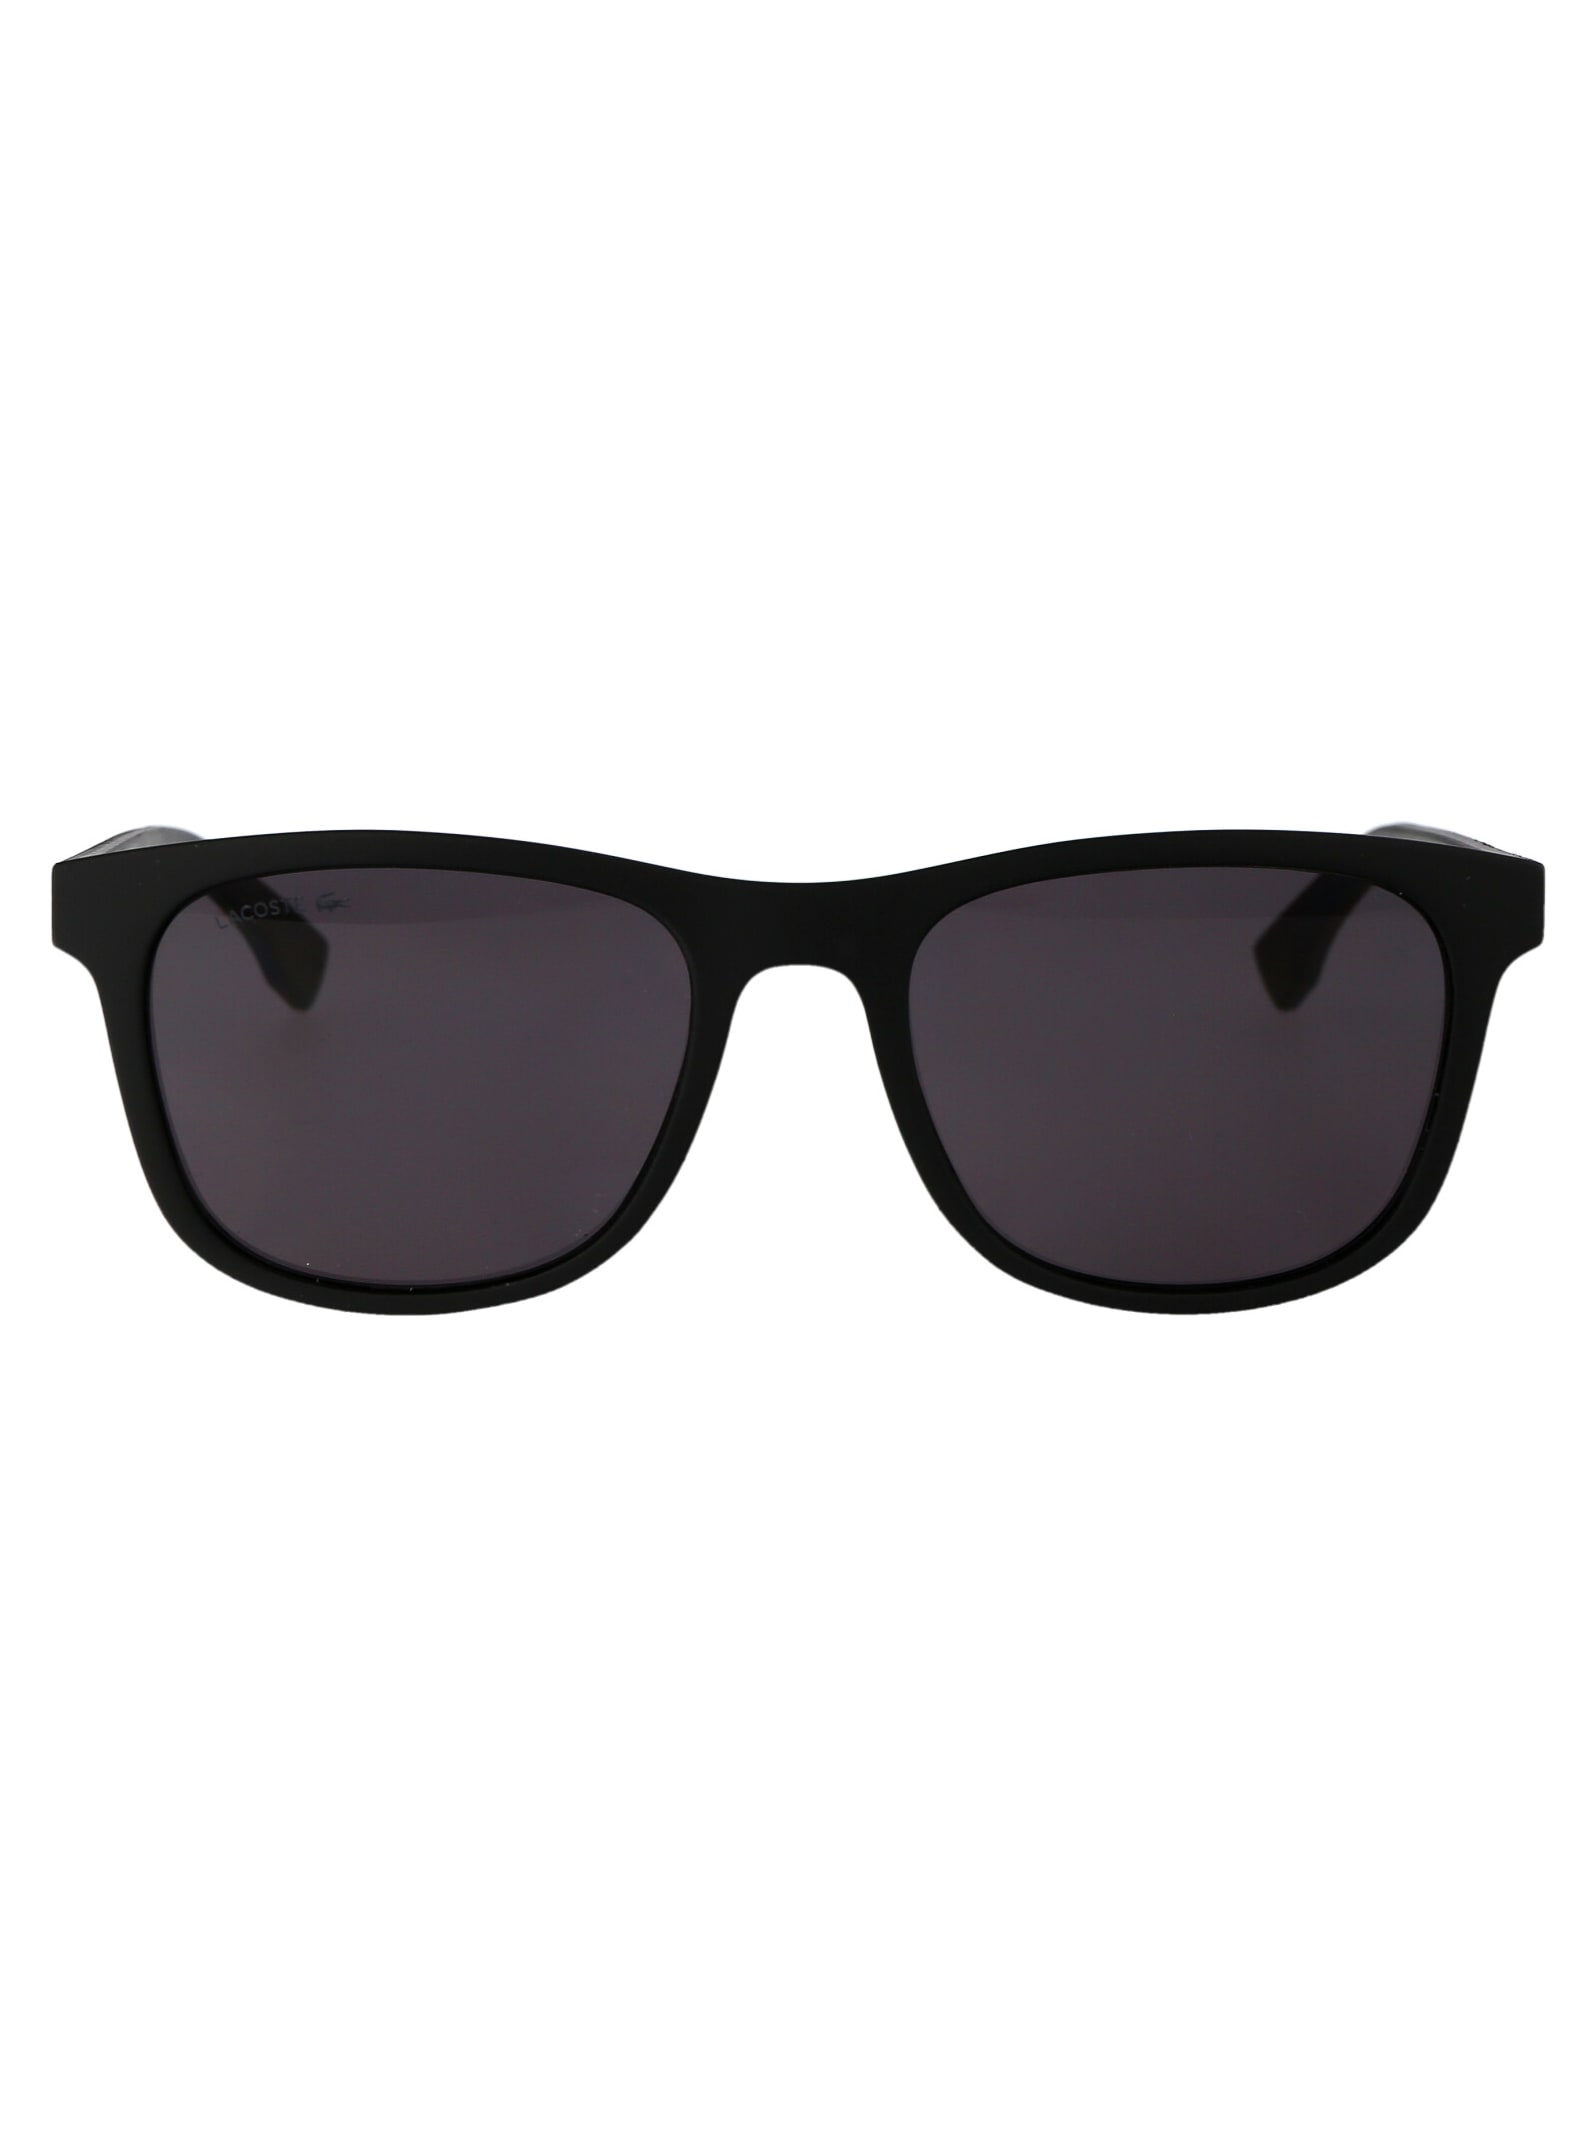 L884s Sunglasses